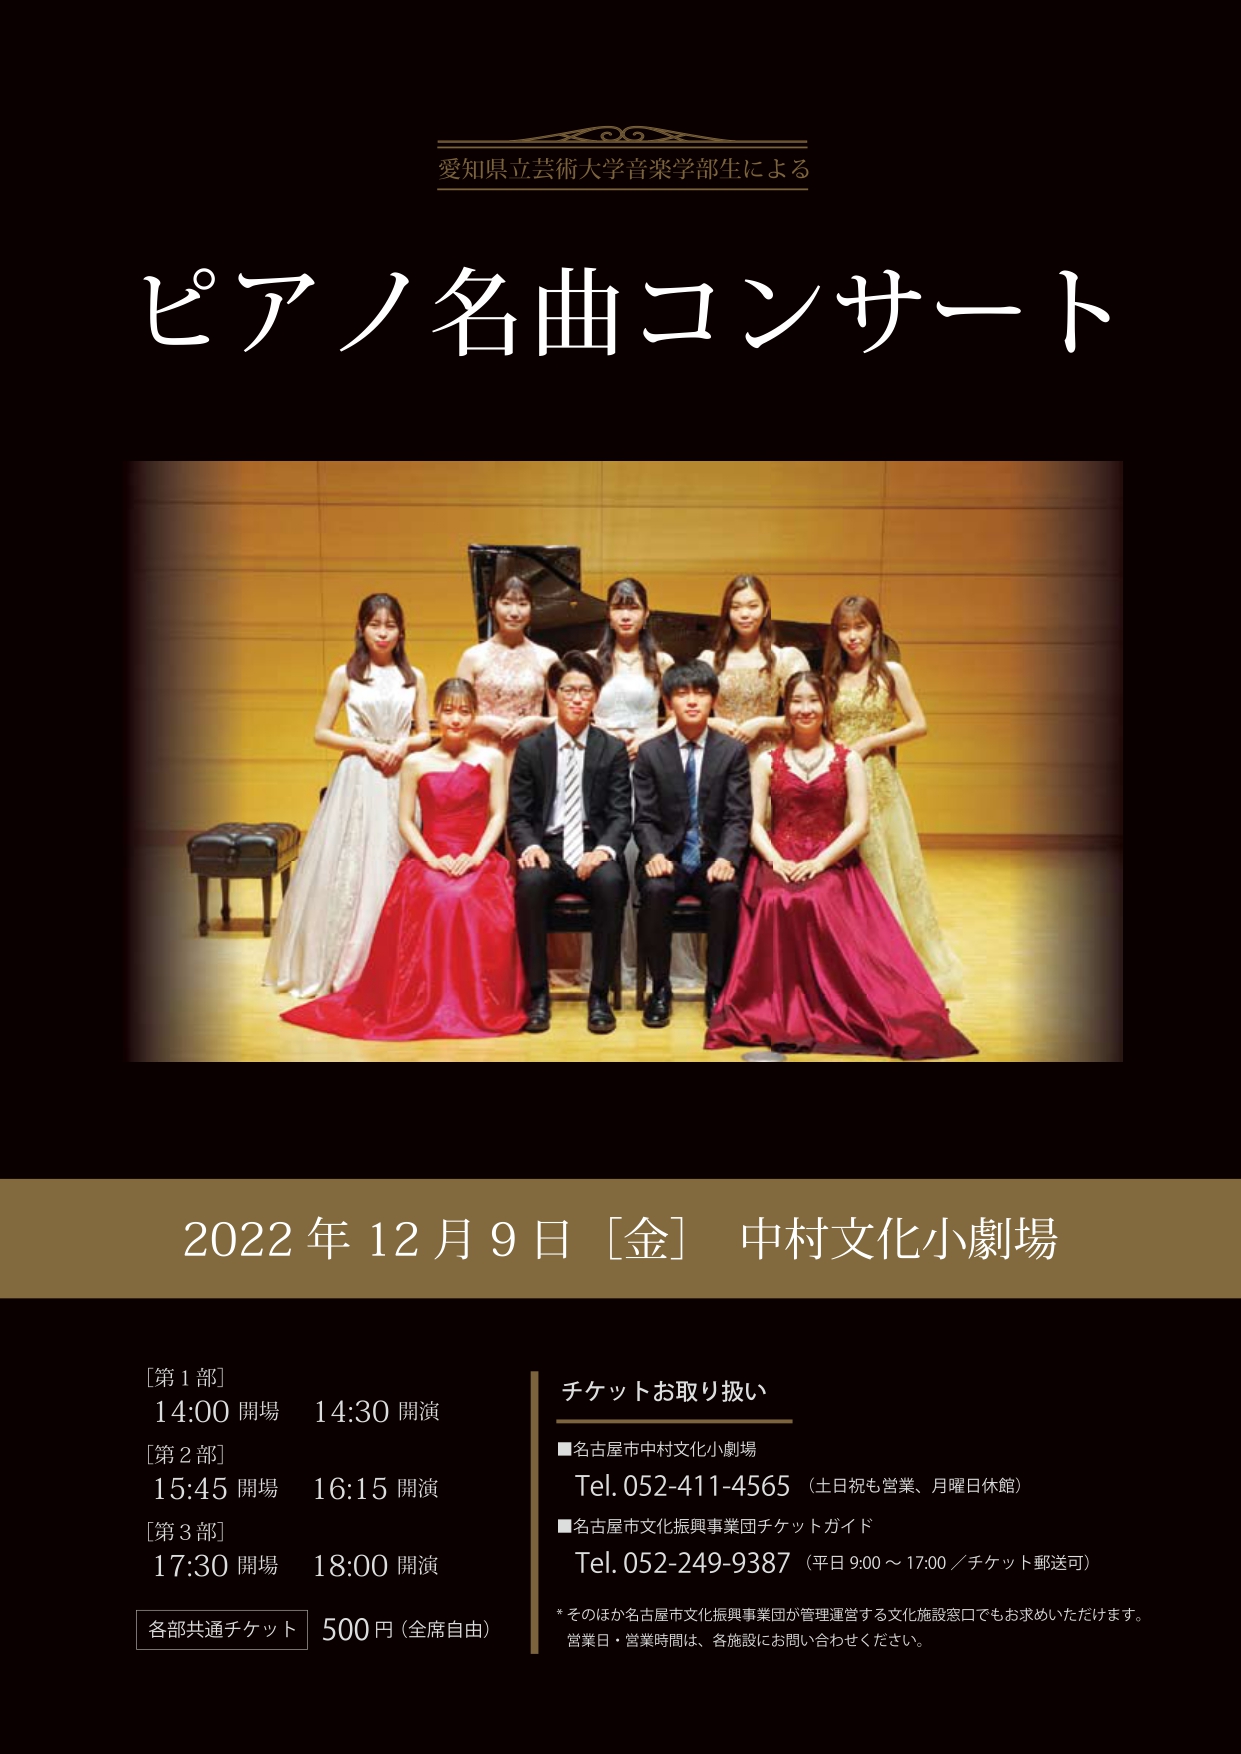 愛知県立芸術大学音楽学部生による ピアノ名曲コンサート 名古屋市文化振興事業団